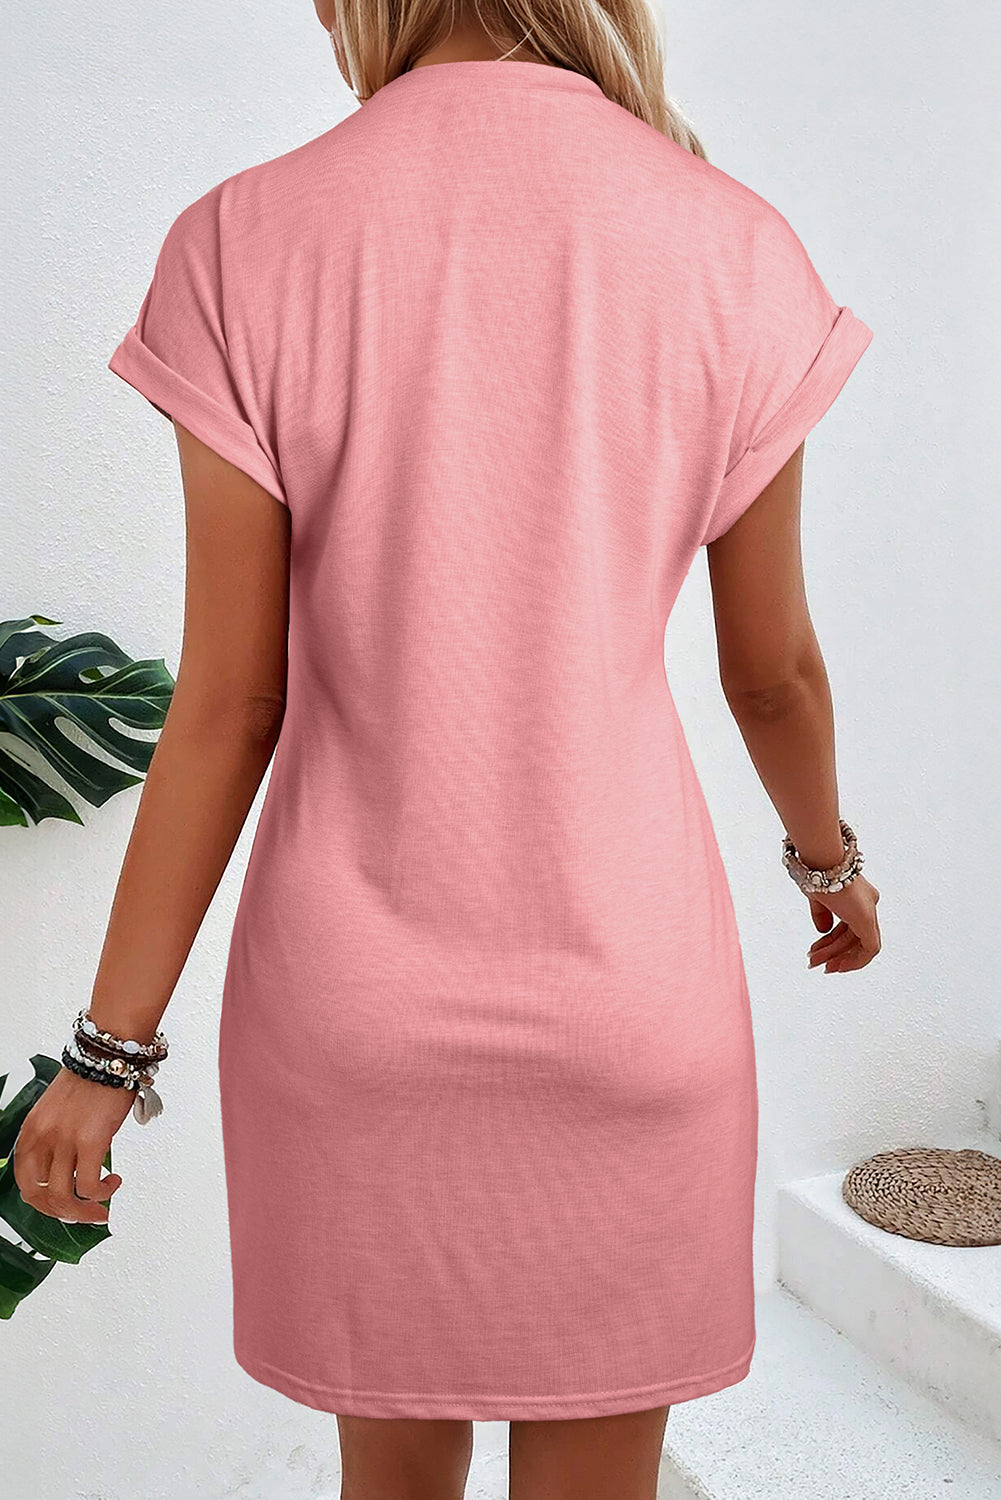 Rose Pink Center Seam Rolled Cuffs T-shirt Dress